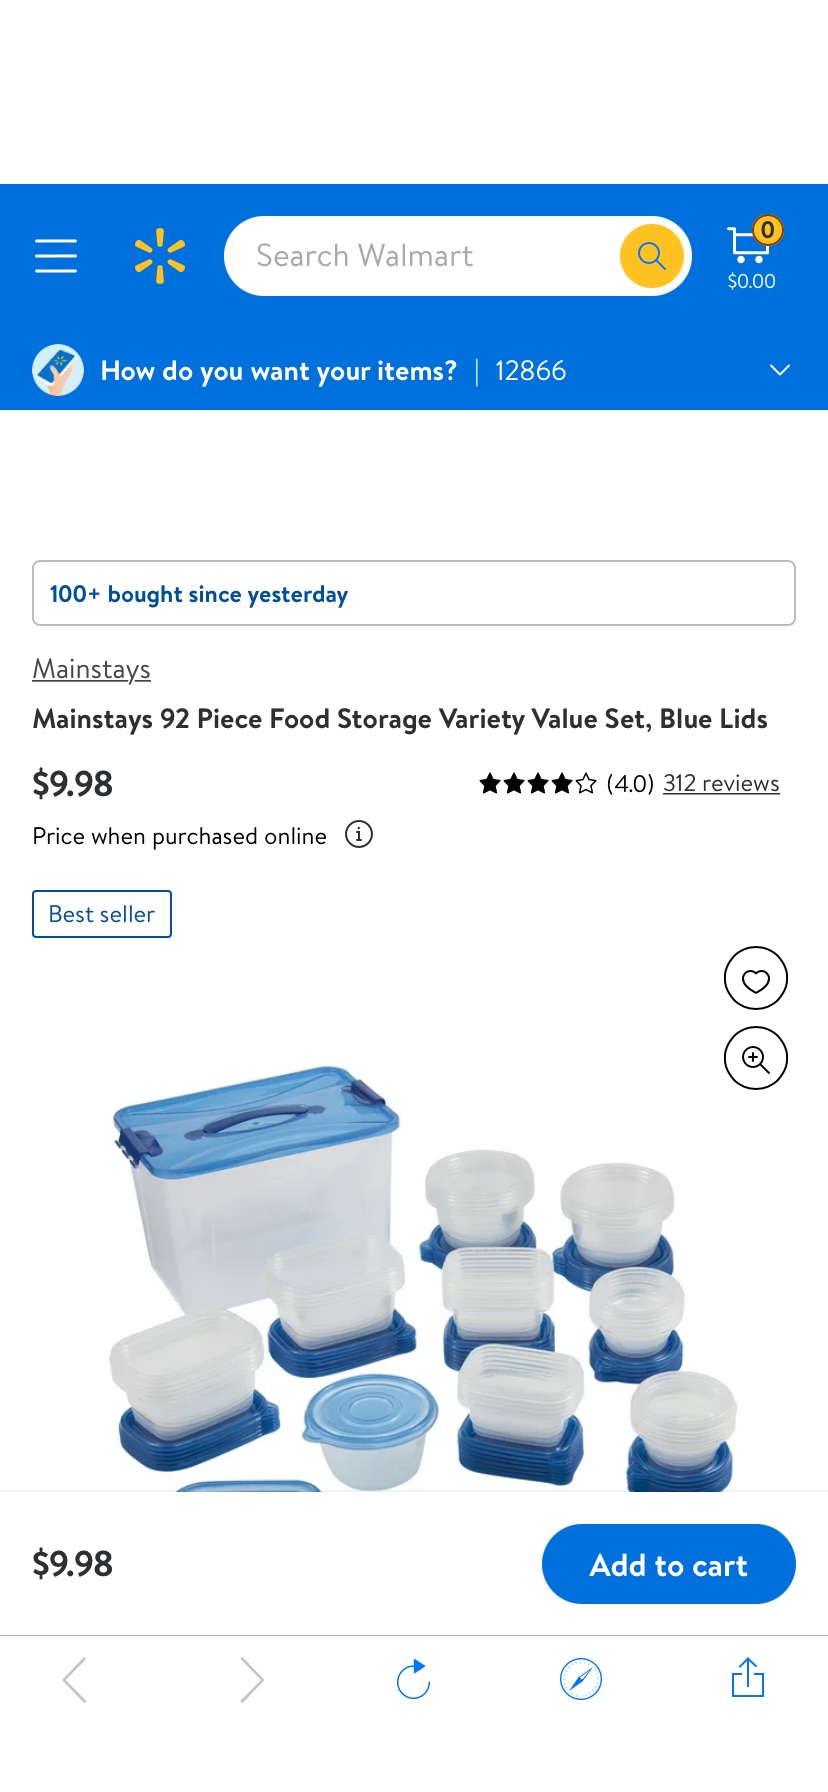 Mainstays 92 Piece Food Storage Variety Value Set, Blue Lids - Walmart.com